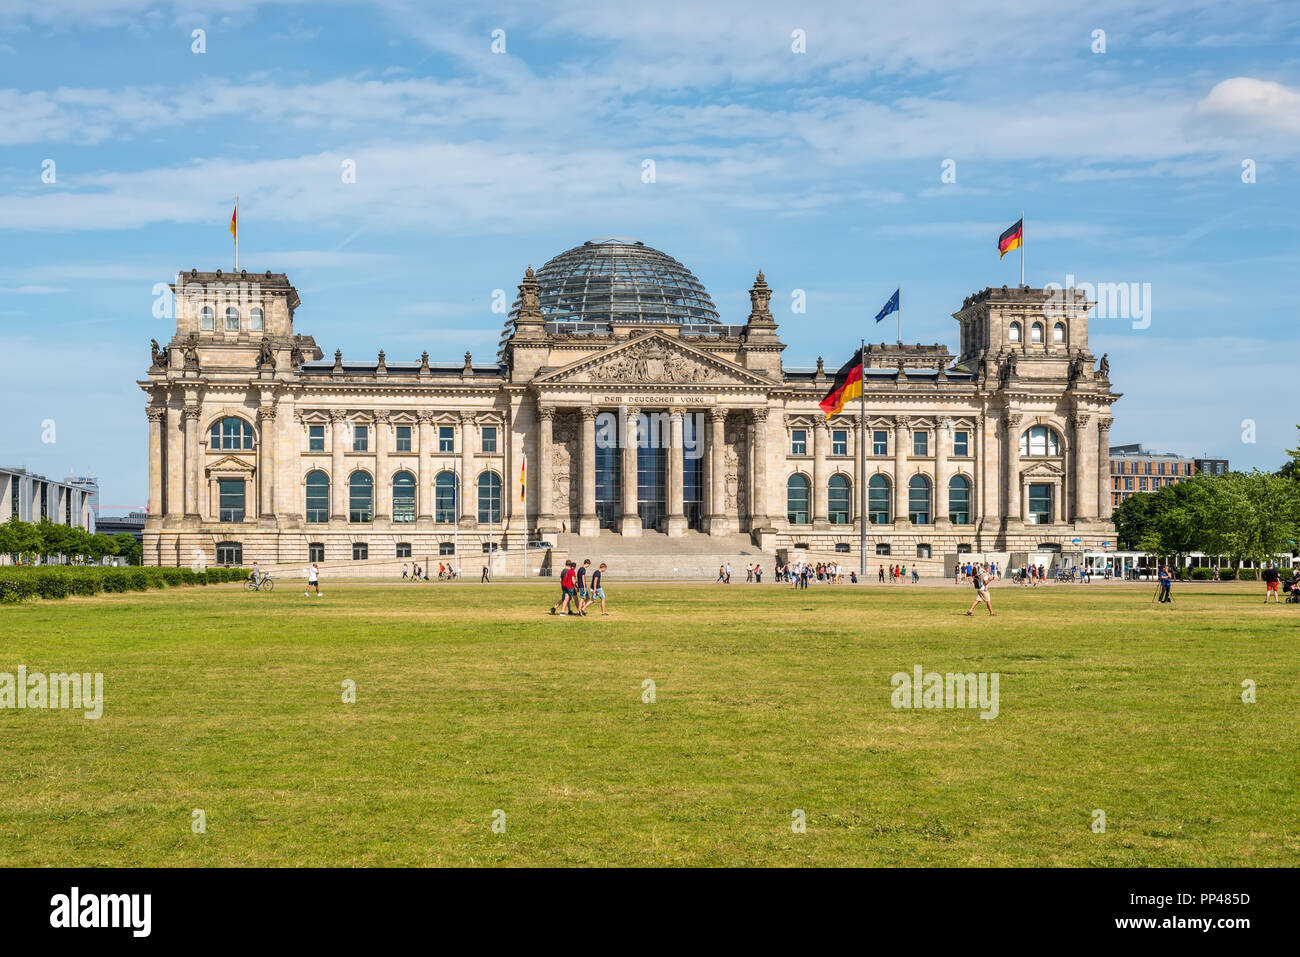 Berlin, Allemagne - le 28 mai 2017 : Palais du Reichstag, le Parlement allemand (Deutscher Bundestag), les personnes bénéficiant d'une journée de printemps. Le dévouement de deutsche marks Banque D'Images